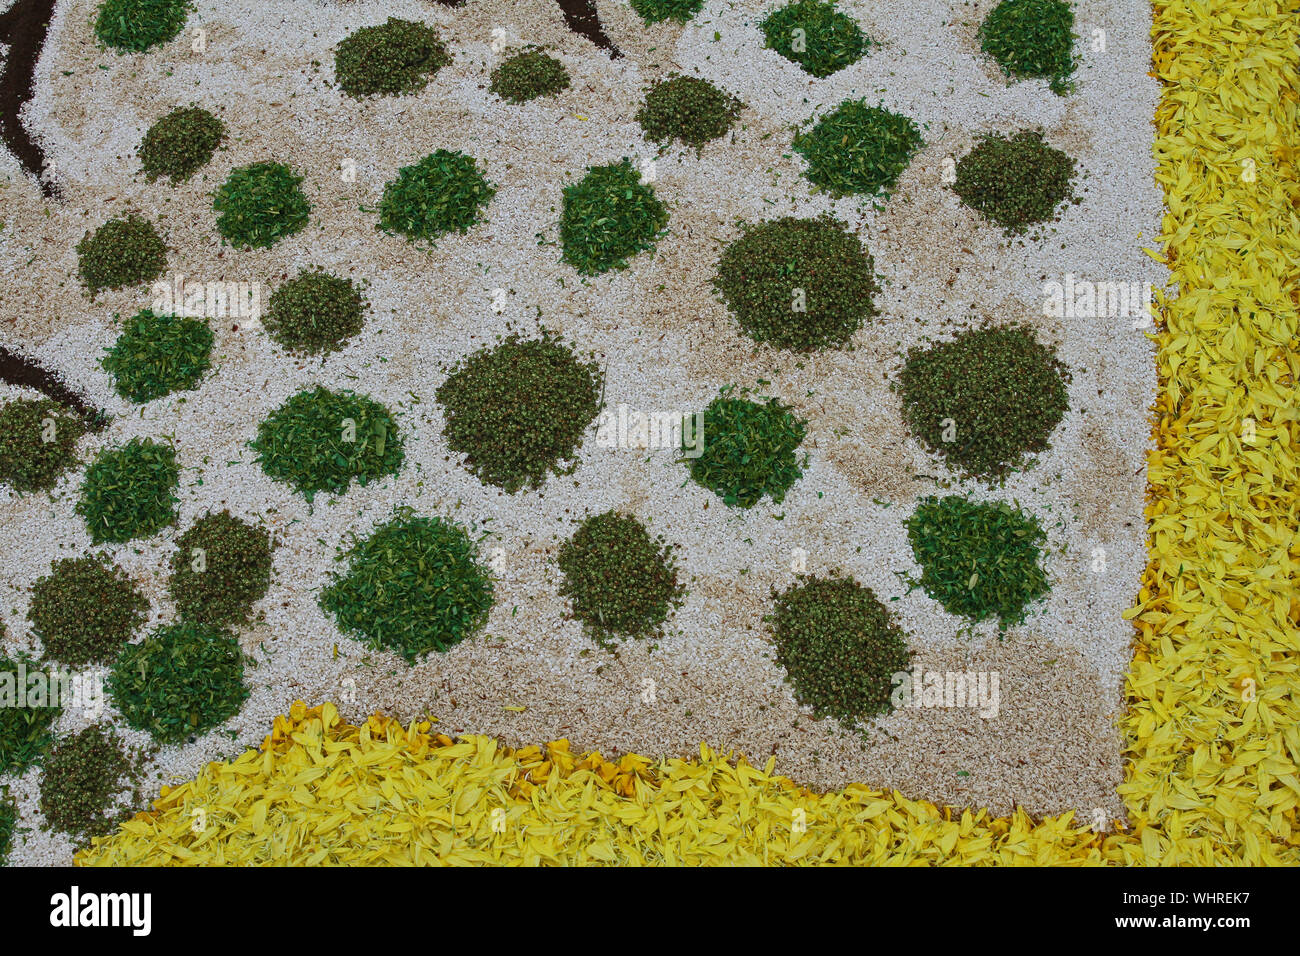 Petali di fiore, cereali, riso, fagioli e semi rendendo un modello astratto di Castelraimondo nella regione Marche Italia per celebrare il Corpus Domini Foto Stock